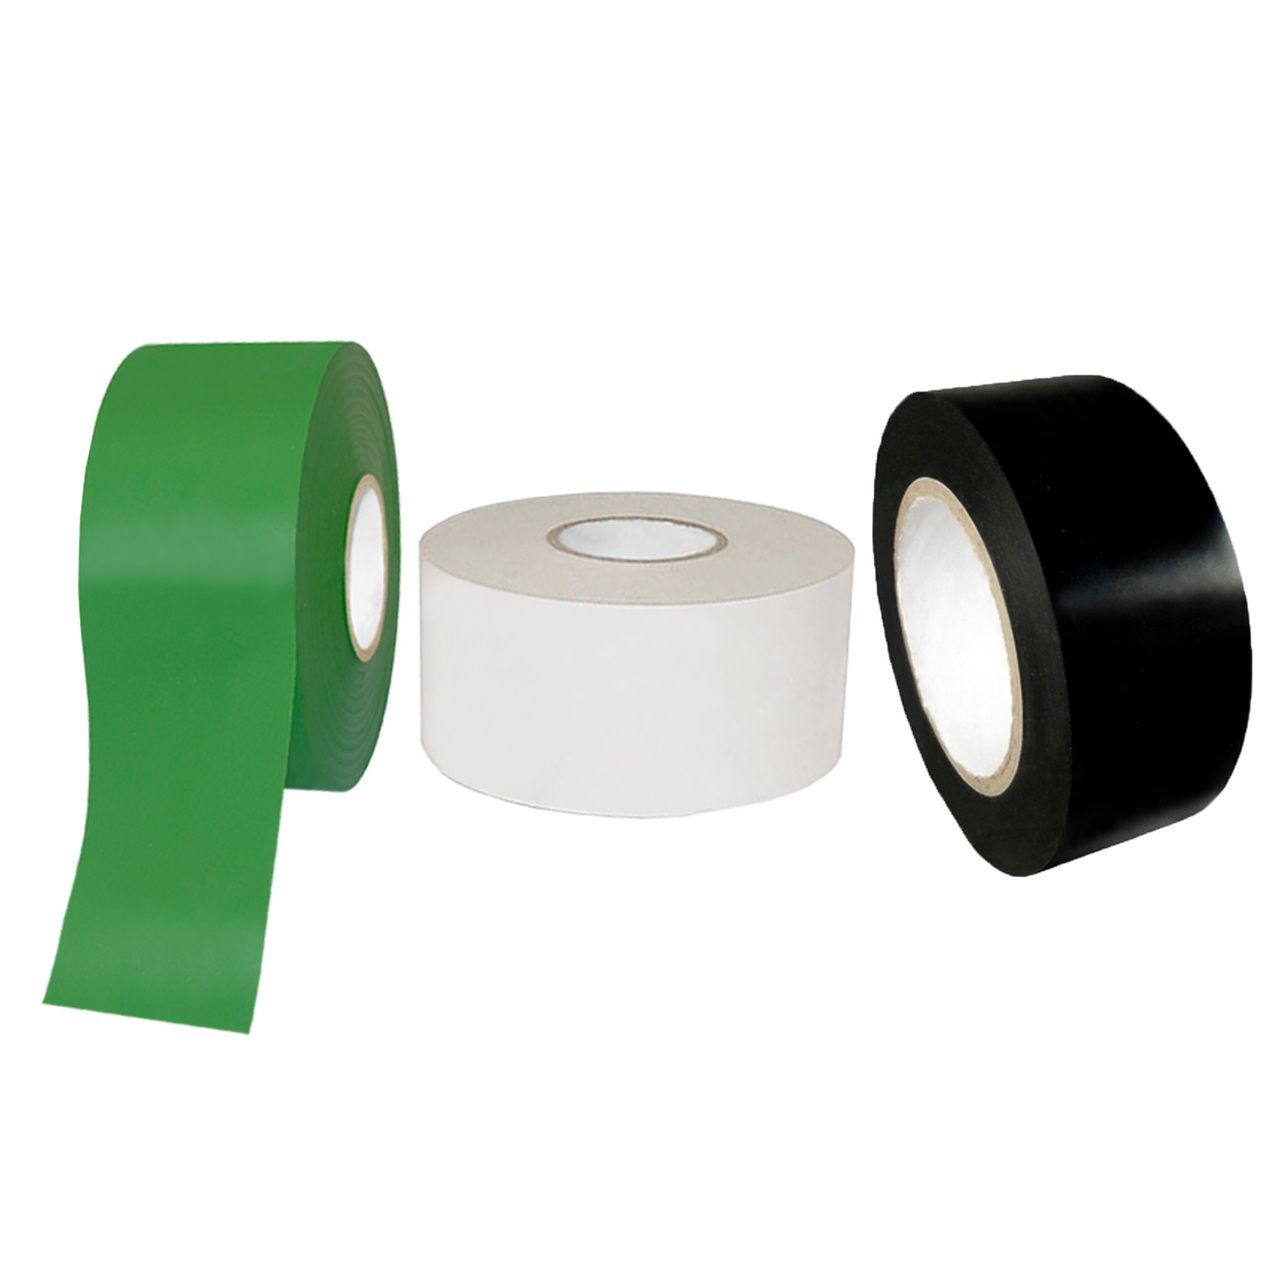 Freezr Flex Pipe wrap 2" x 100' 10 MIL 3 roll lot Tape. 